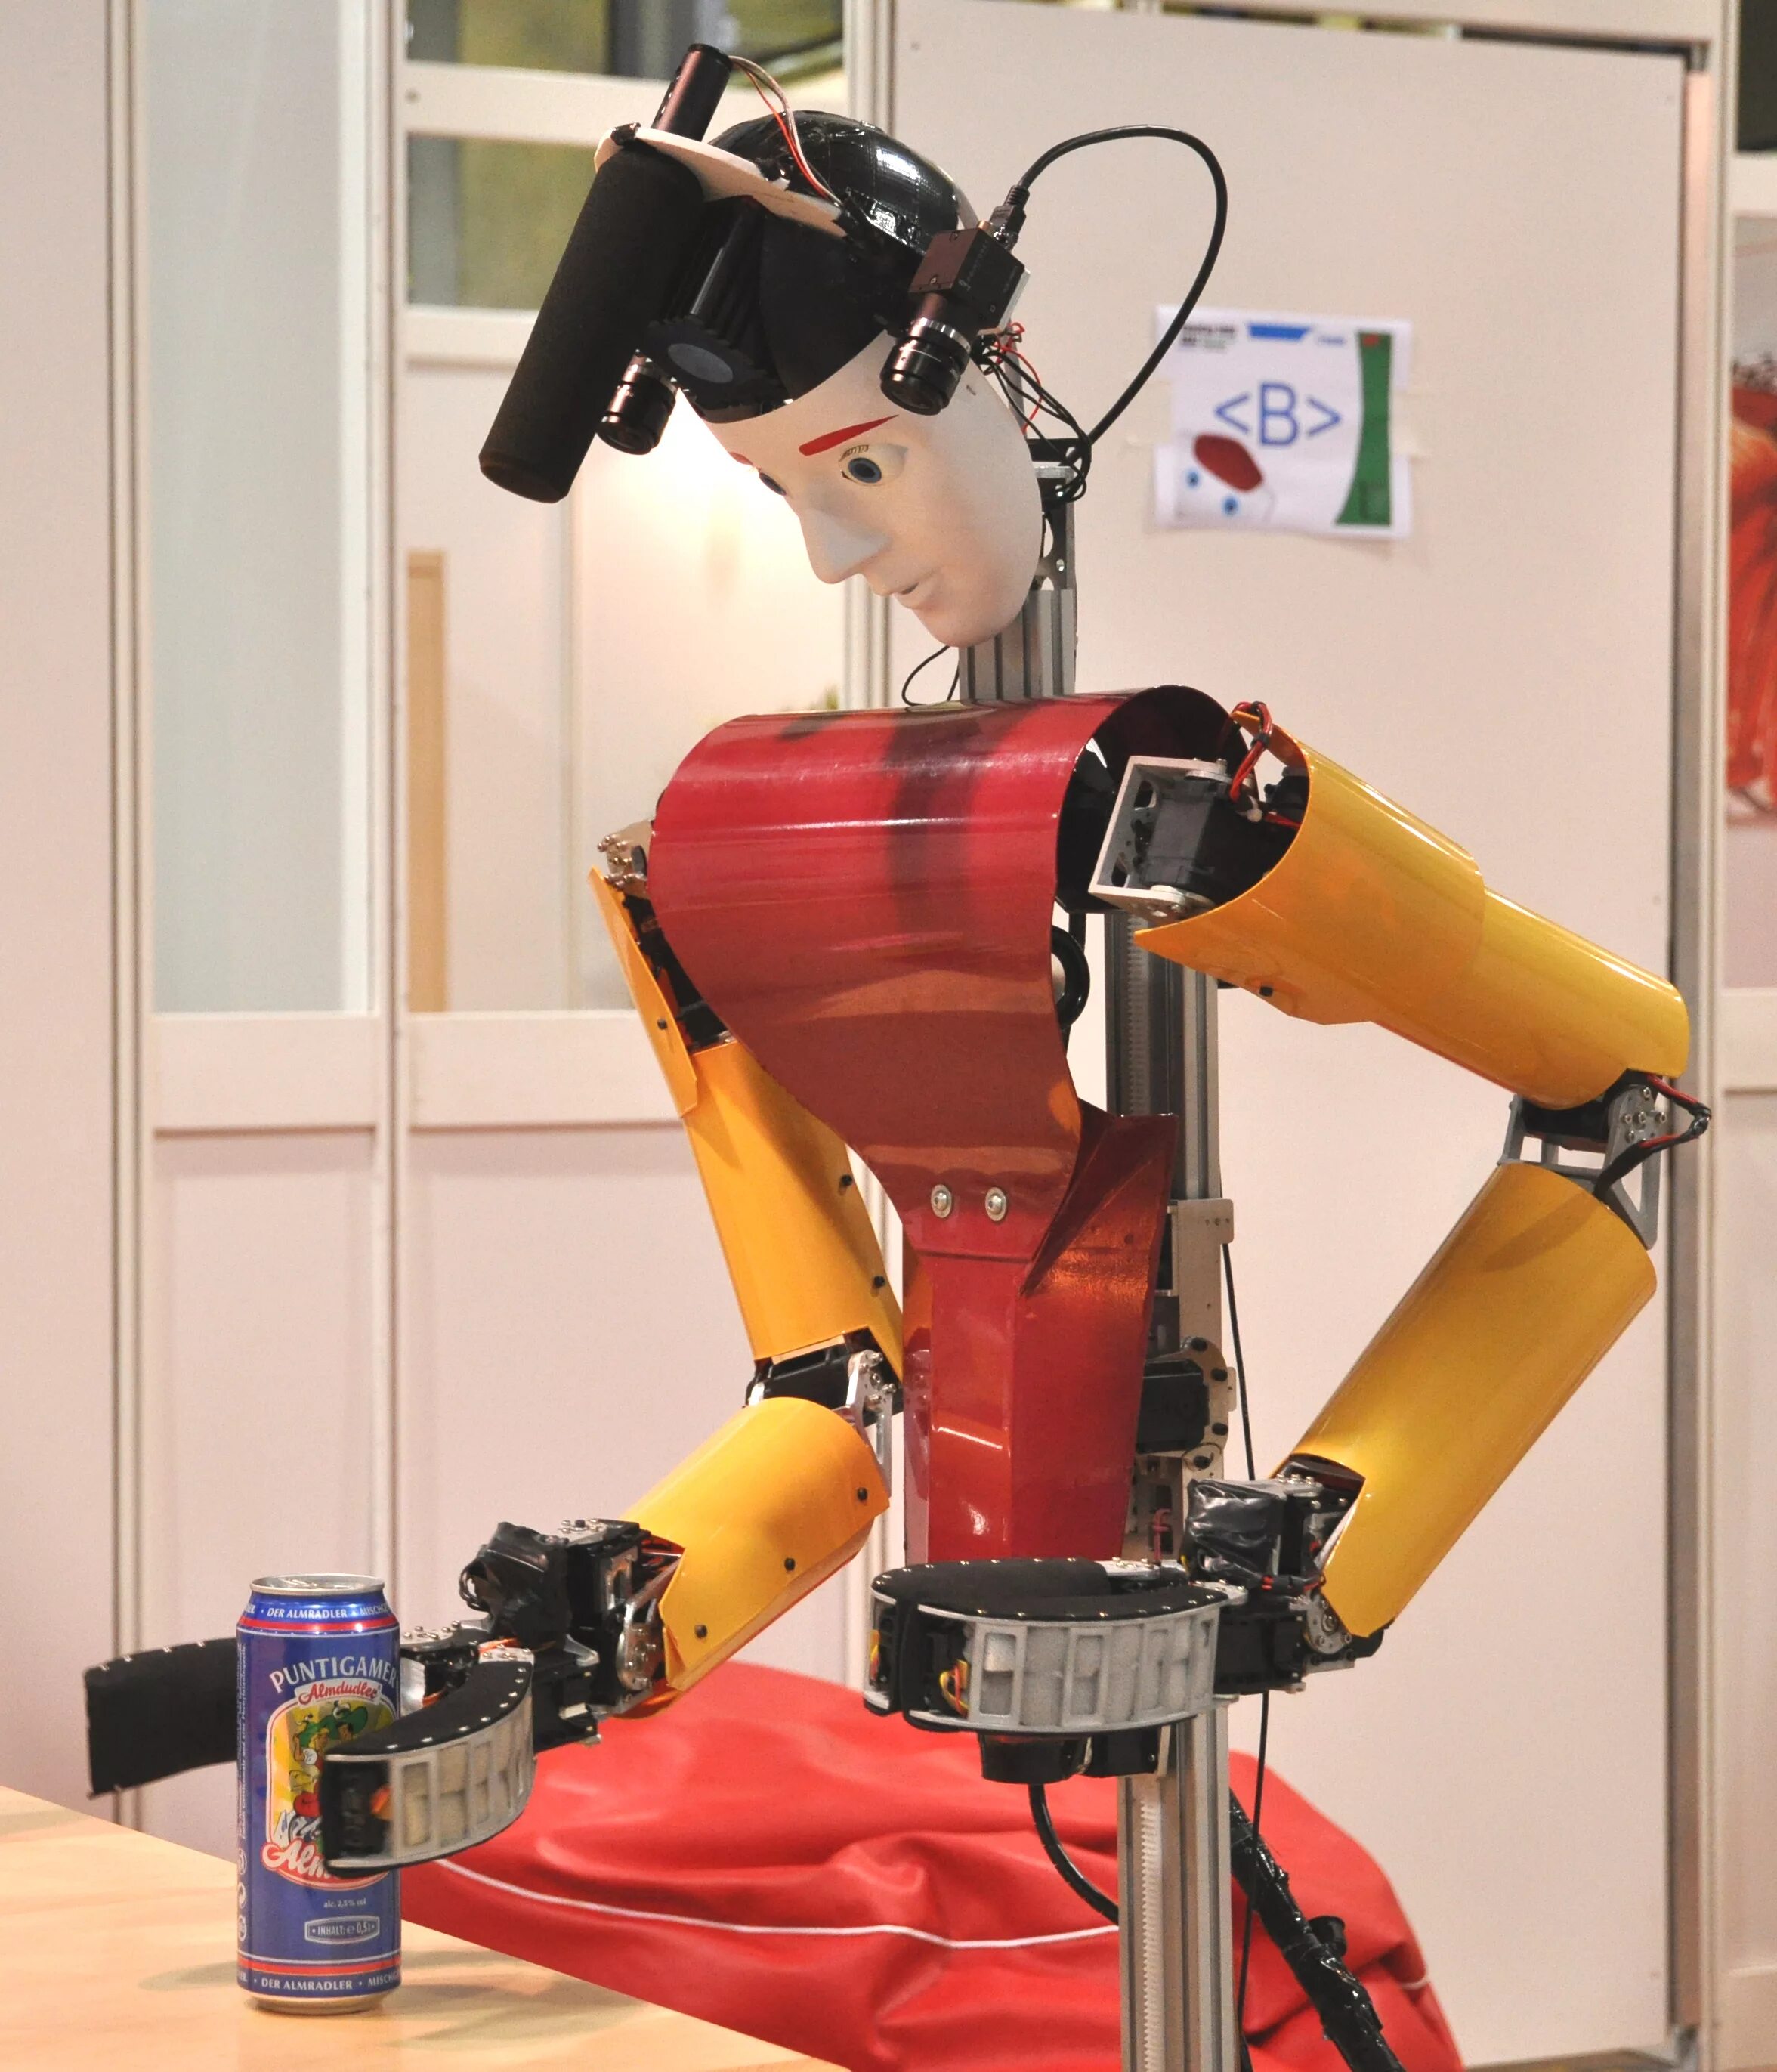 Робот. Видеоролики про роботов. Робот на роликах. Облачная робототехника. Покажи видео про роботов